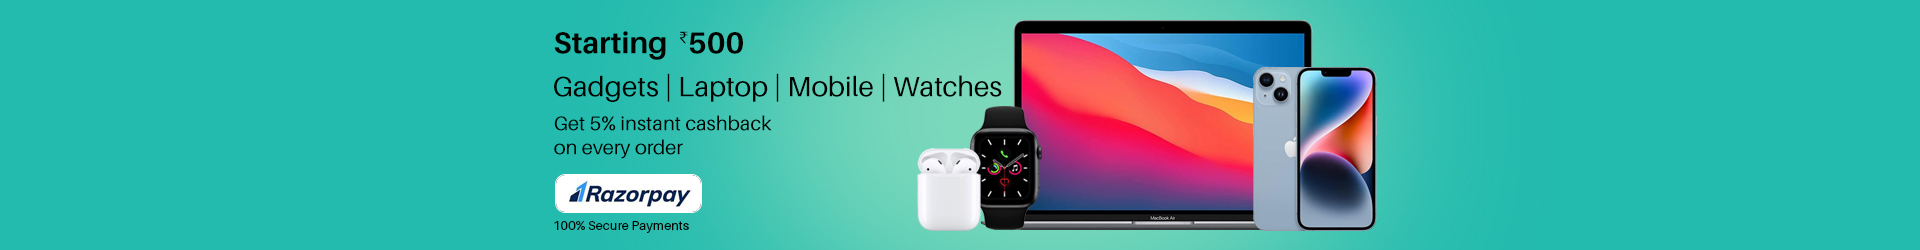 Gadgets | Laptop | Mobile | Accessories